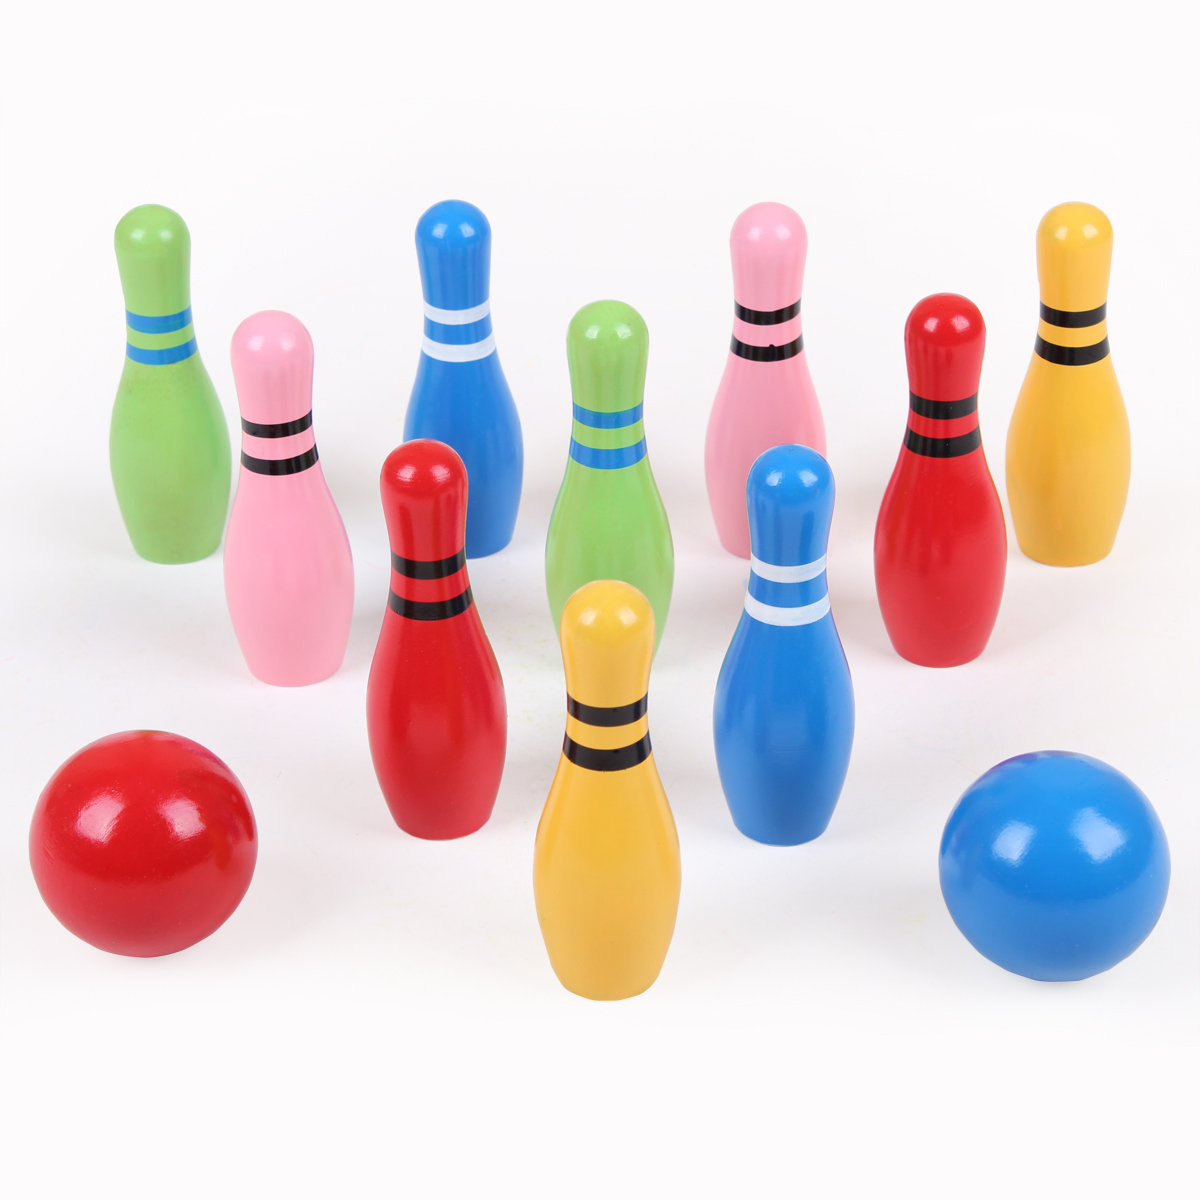 厂家直销充气保龄球套装玩具 PVC充气玩具球套装 塑胶儿童玩具-阿里巴巴